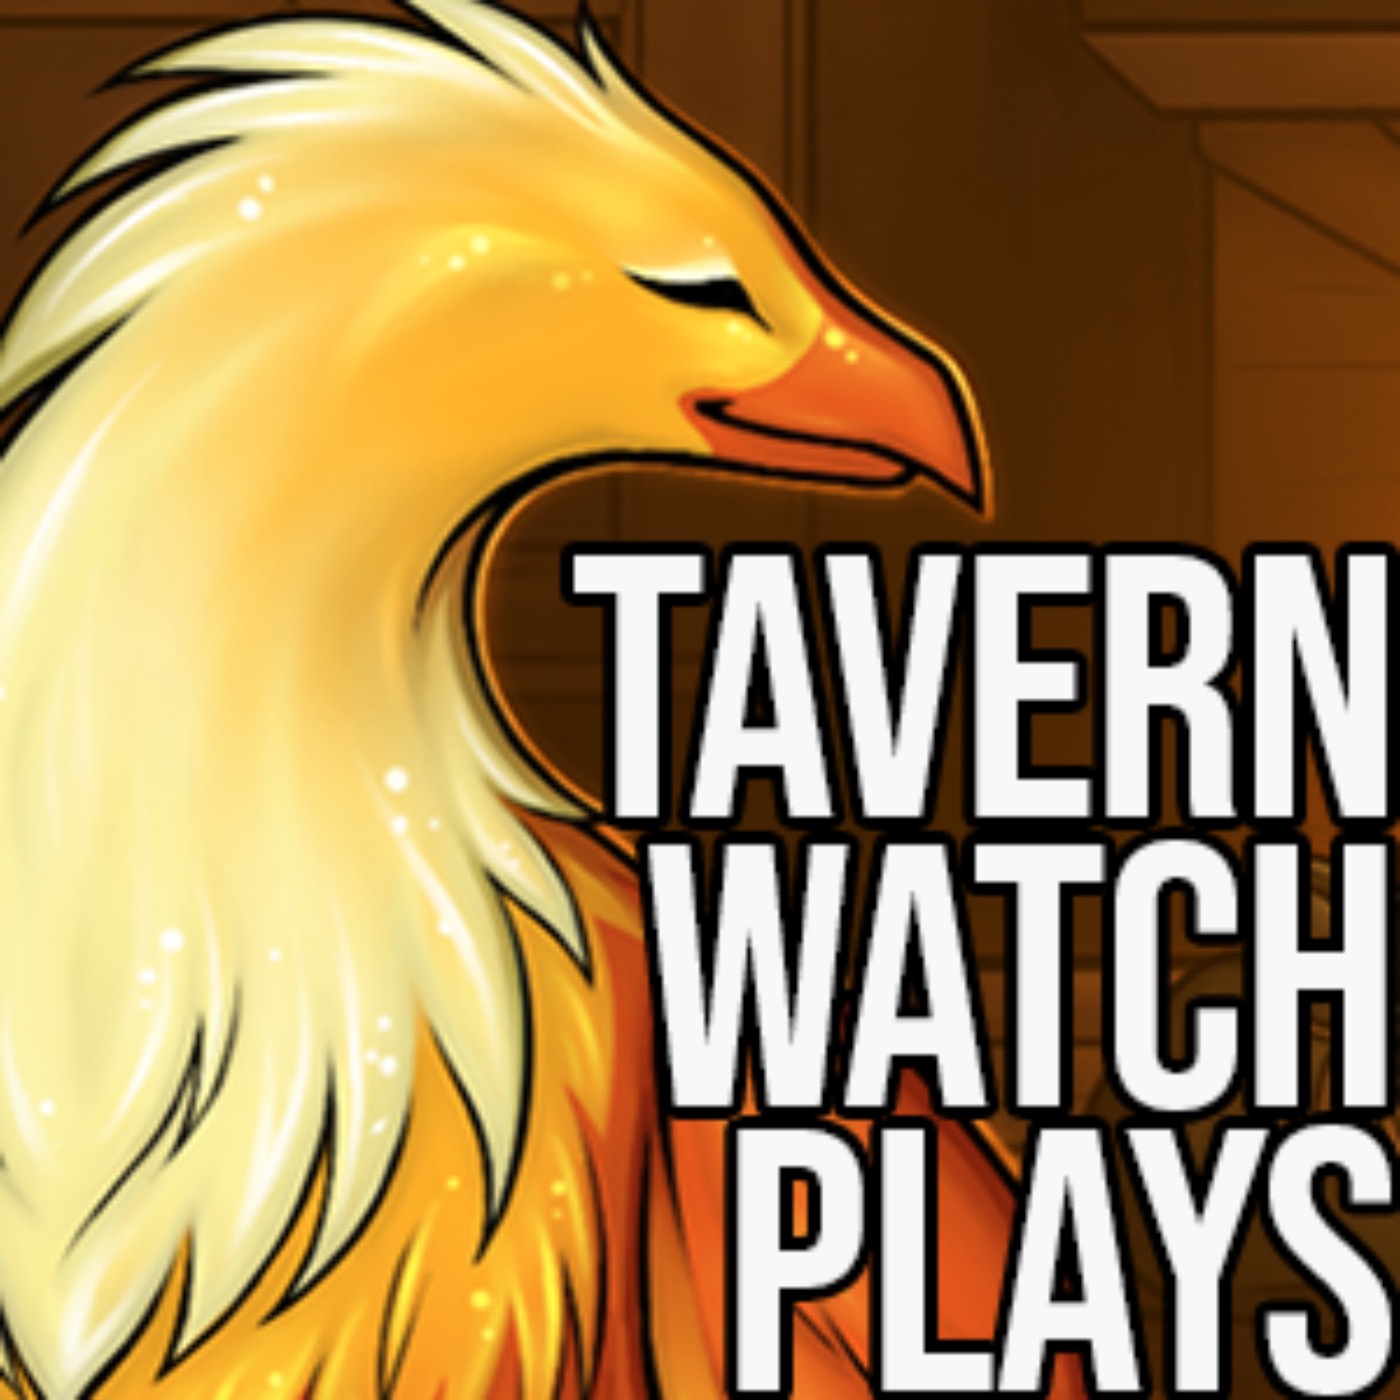 Tavern Watch Plays Pathfinder 04: Five adventurers walk into a dungeon...